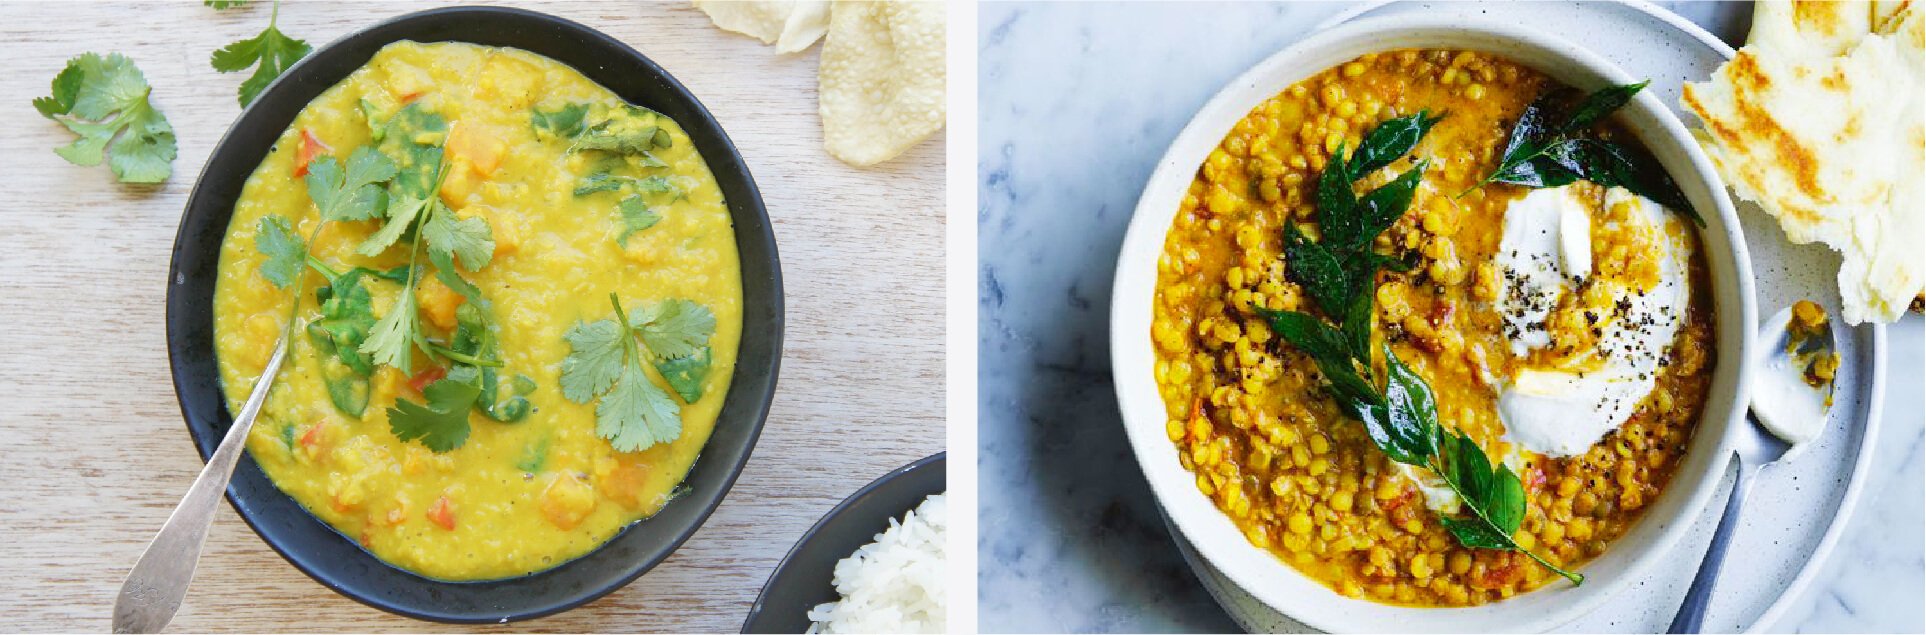 Sri Lankan dhal curry recipe